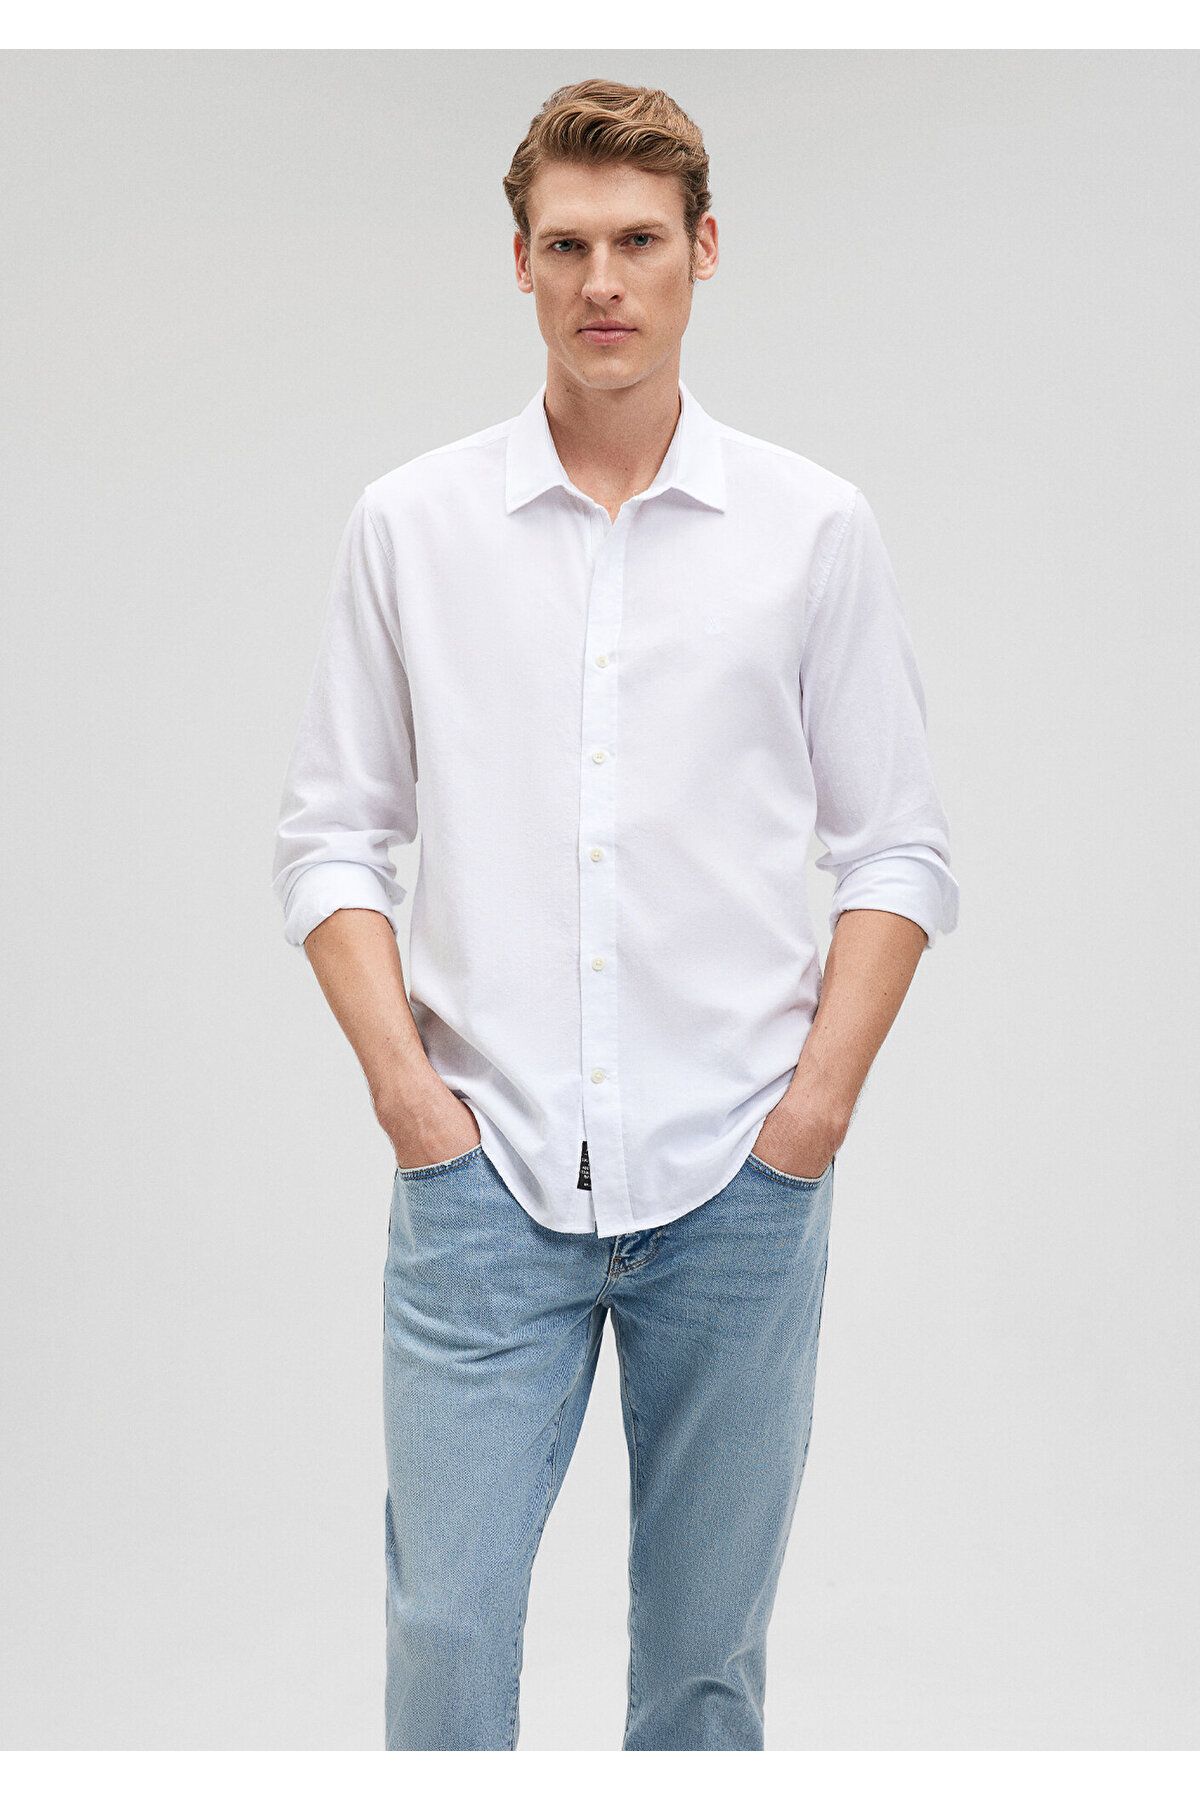 Mavi Beyaz Gömlek Slim Fit / Dar Kesim 0211030-620